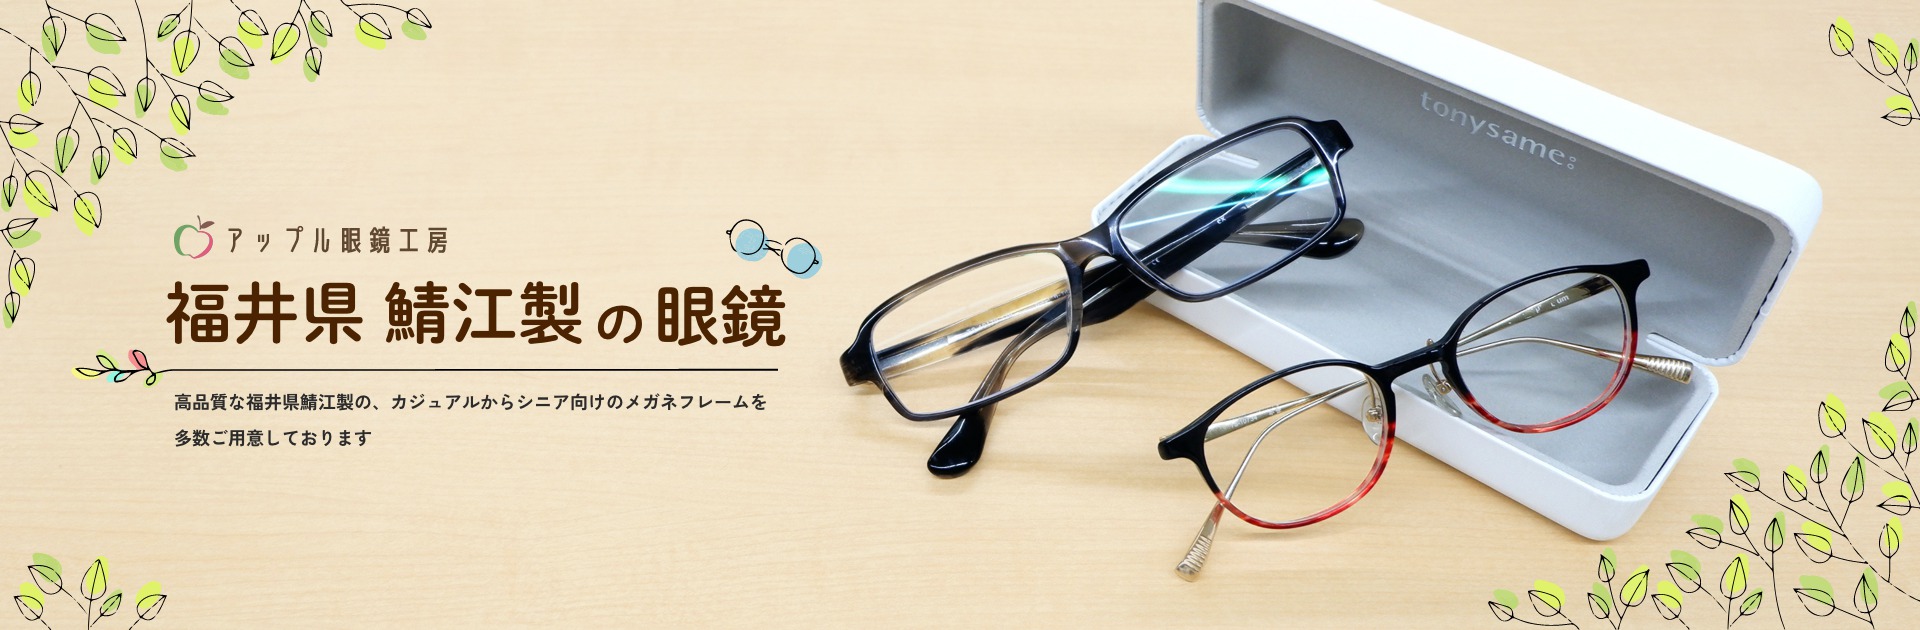 福井県鯖江製の眼鏡 アップル眼鏡工房